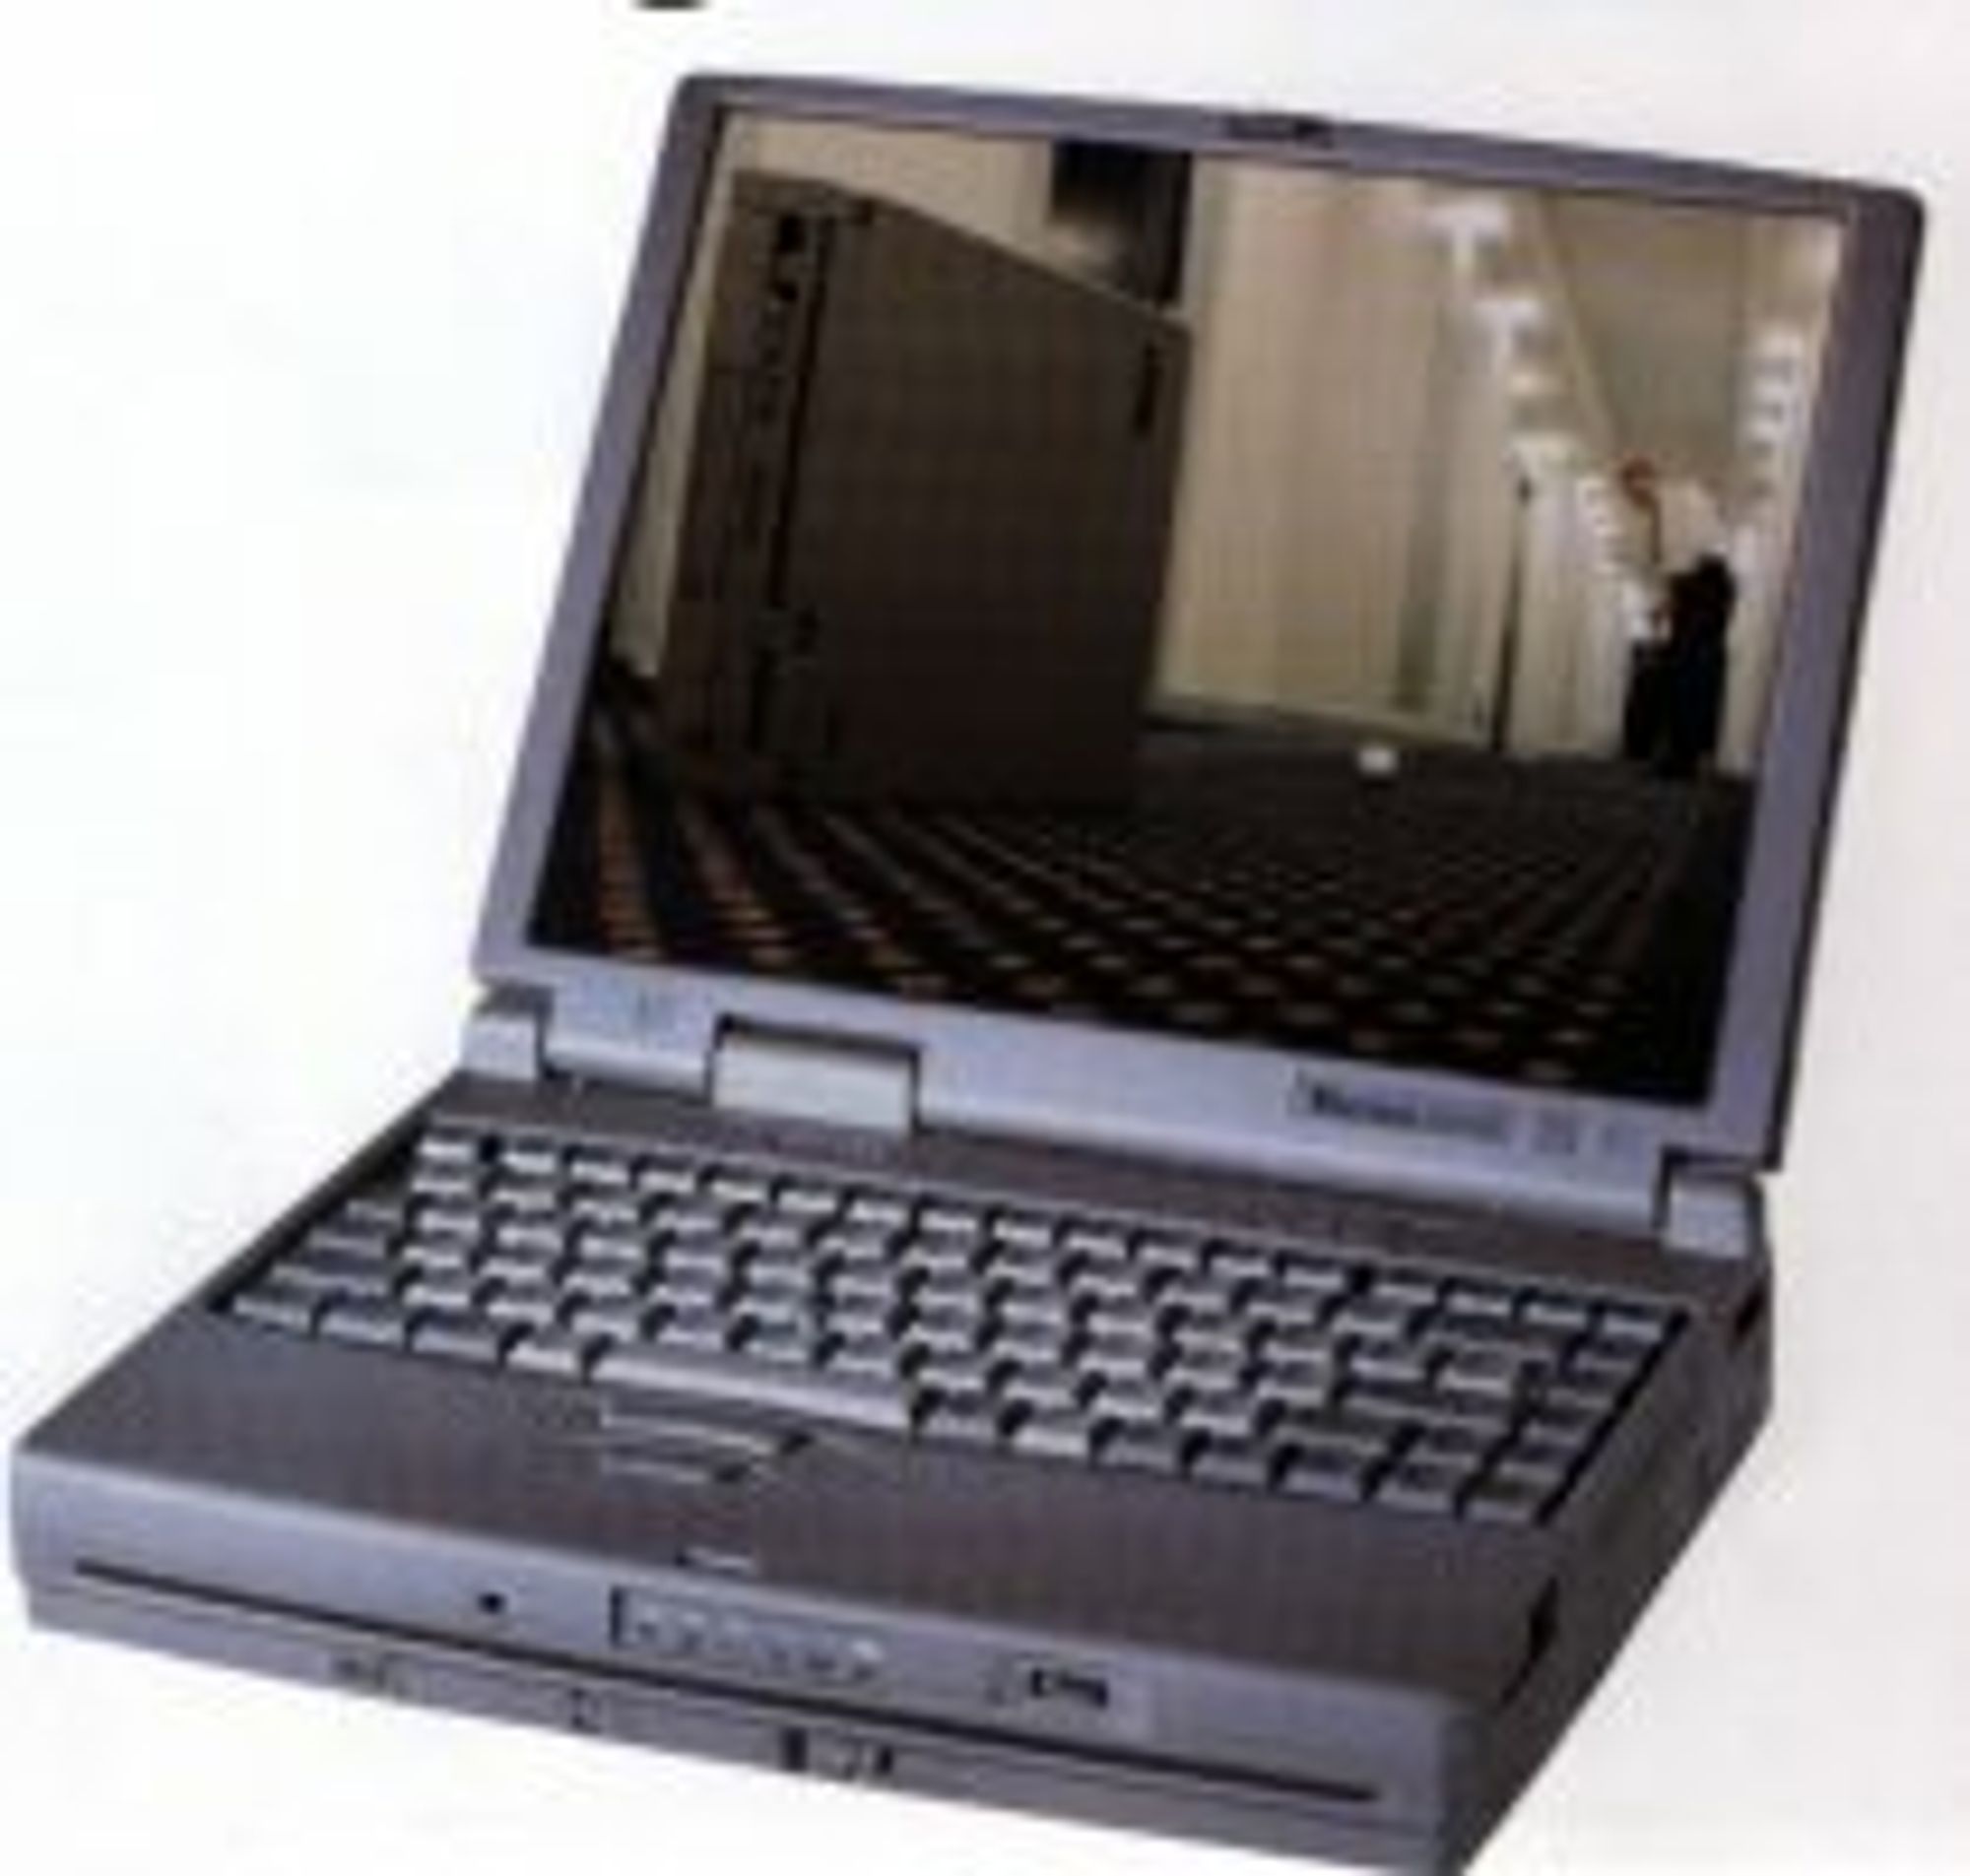 Toshiba Tecra 780DVD